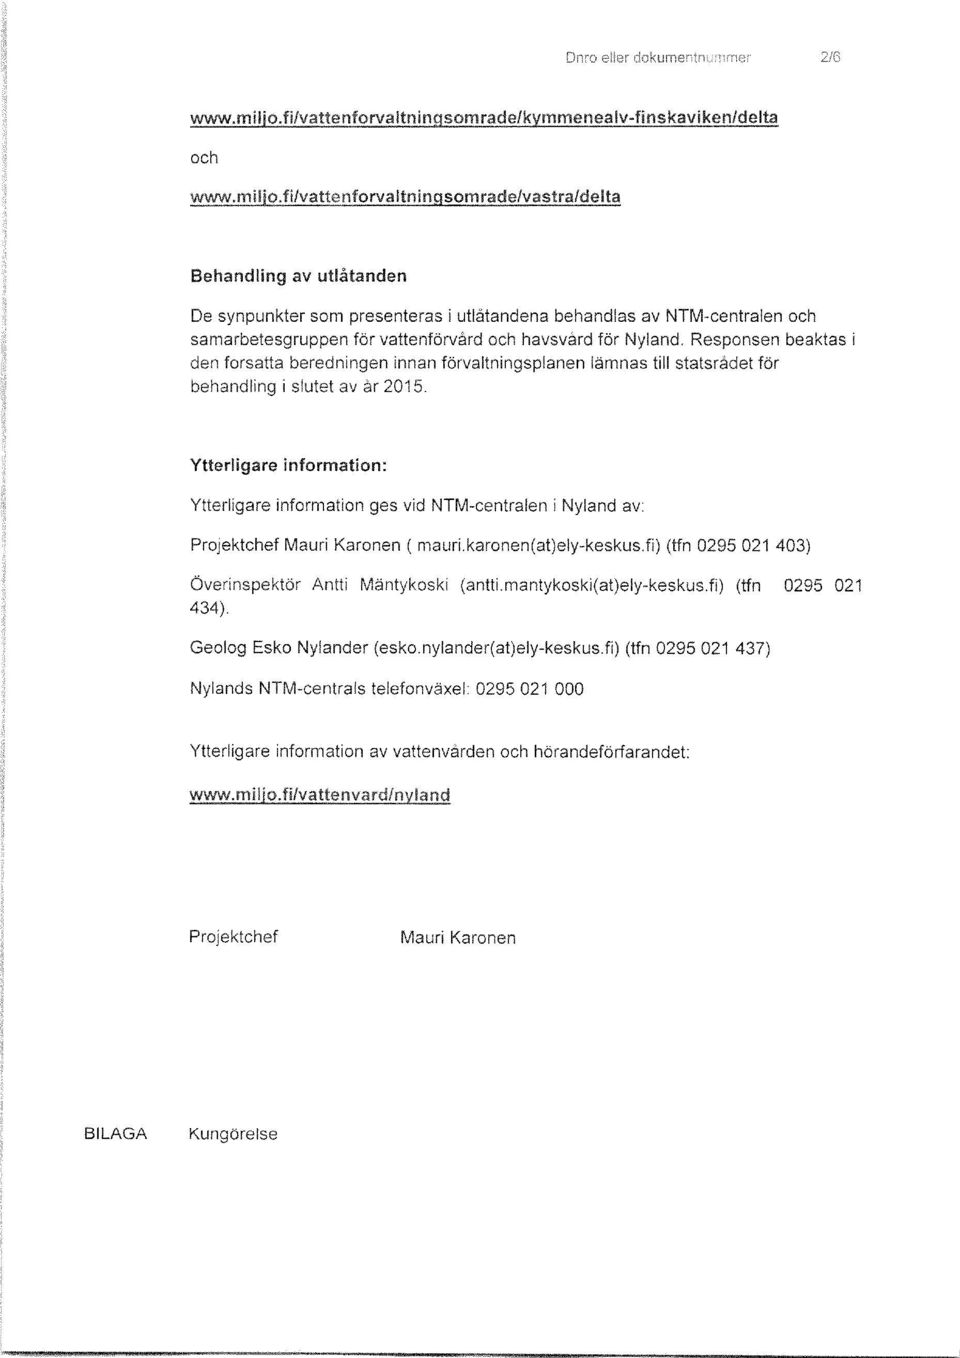 Ytterligare information: Ytterligare information ges vid NTM-centralen i Nyland av: Projektchef Mauri Karonen (mauri.karonen(at)ely-keskus.